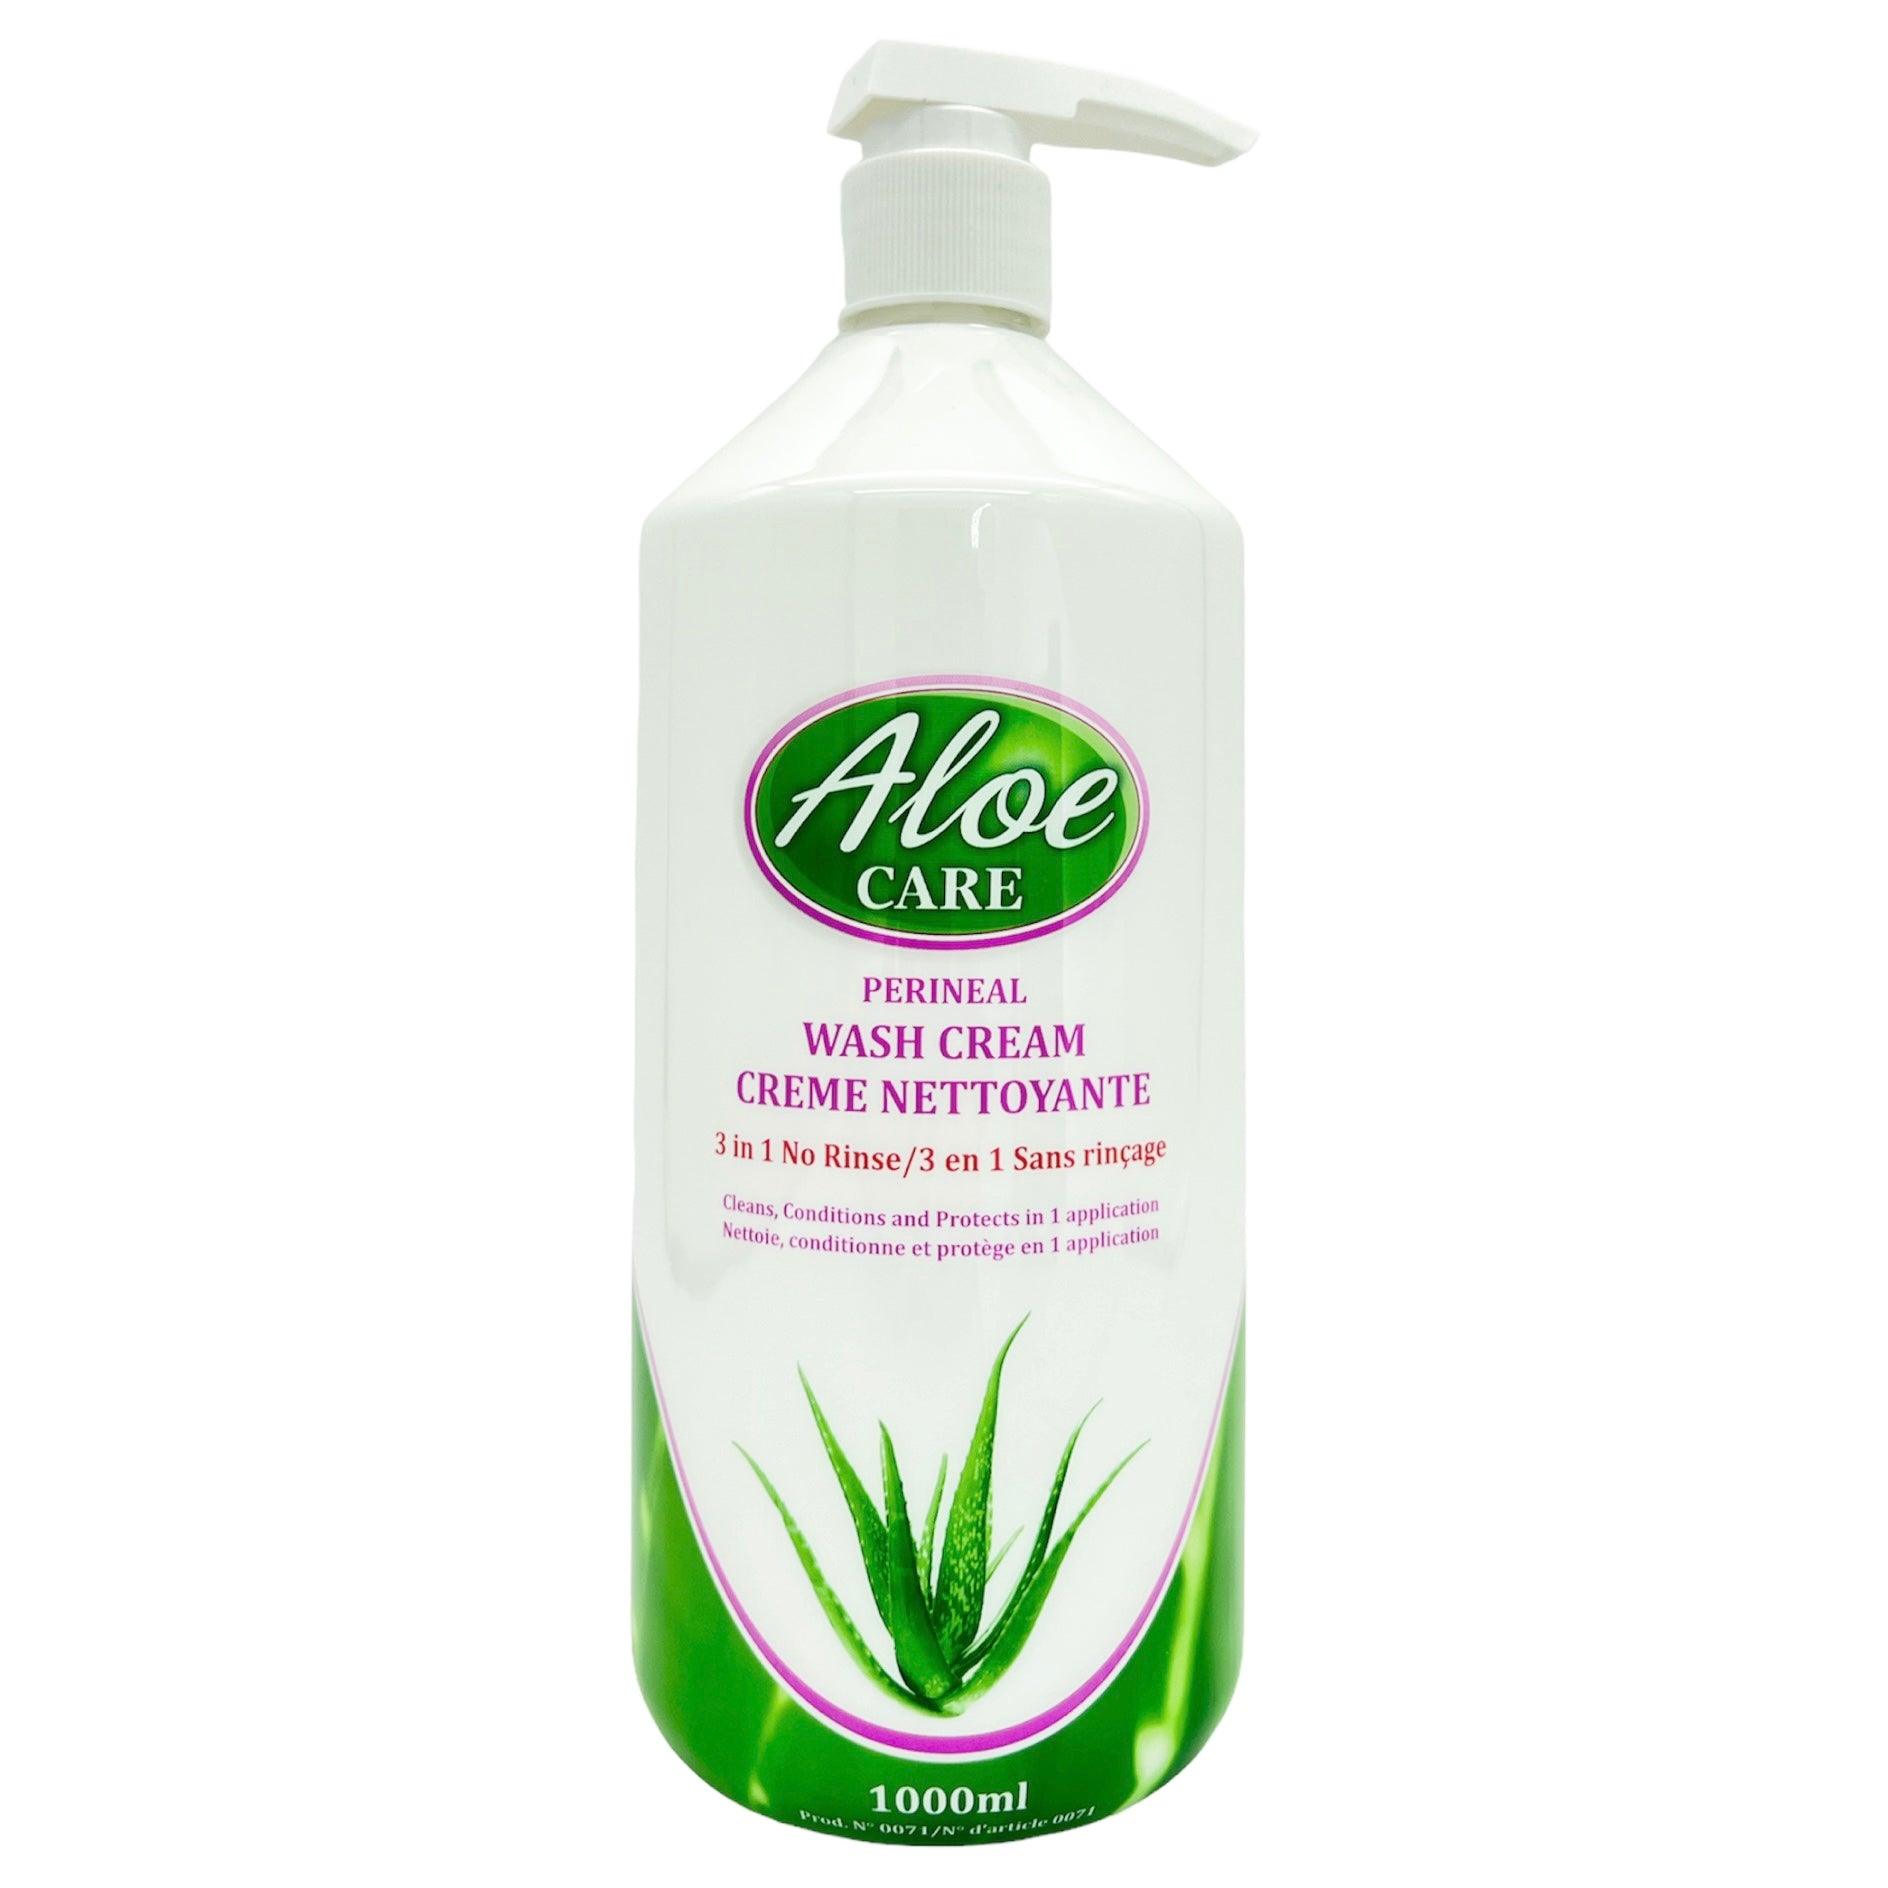 Aloe-Care 3 in 1 No Rinse Perineal Wash Cream (1000ml)